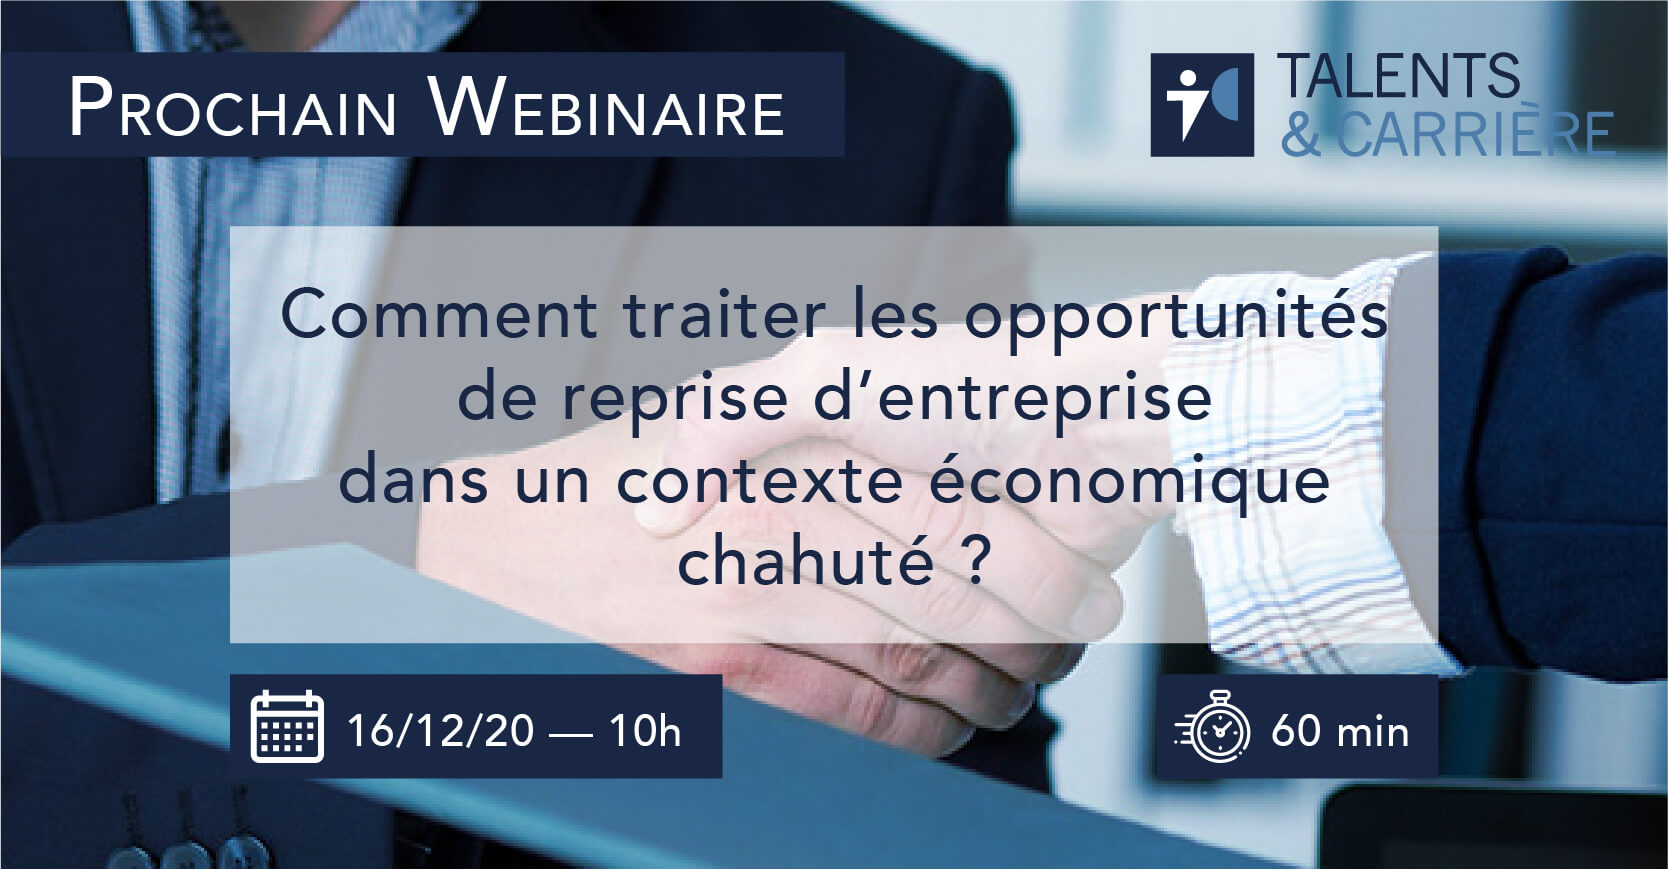 Webinaire 16 décembre 2020 — "Comment traiter les opportunités de reprise d’entreprise dans un contexte économique chahuté ?"